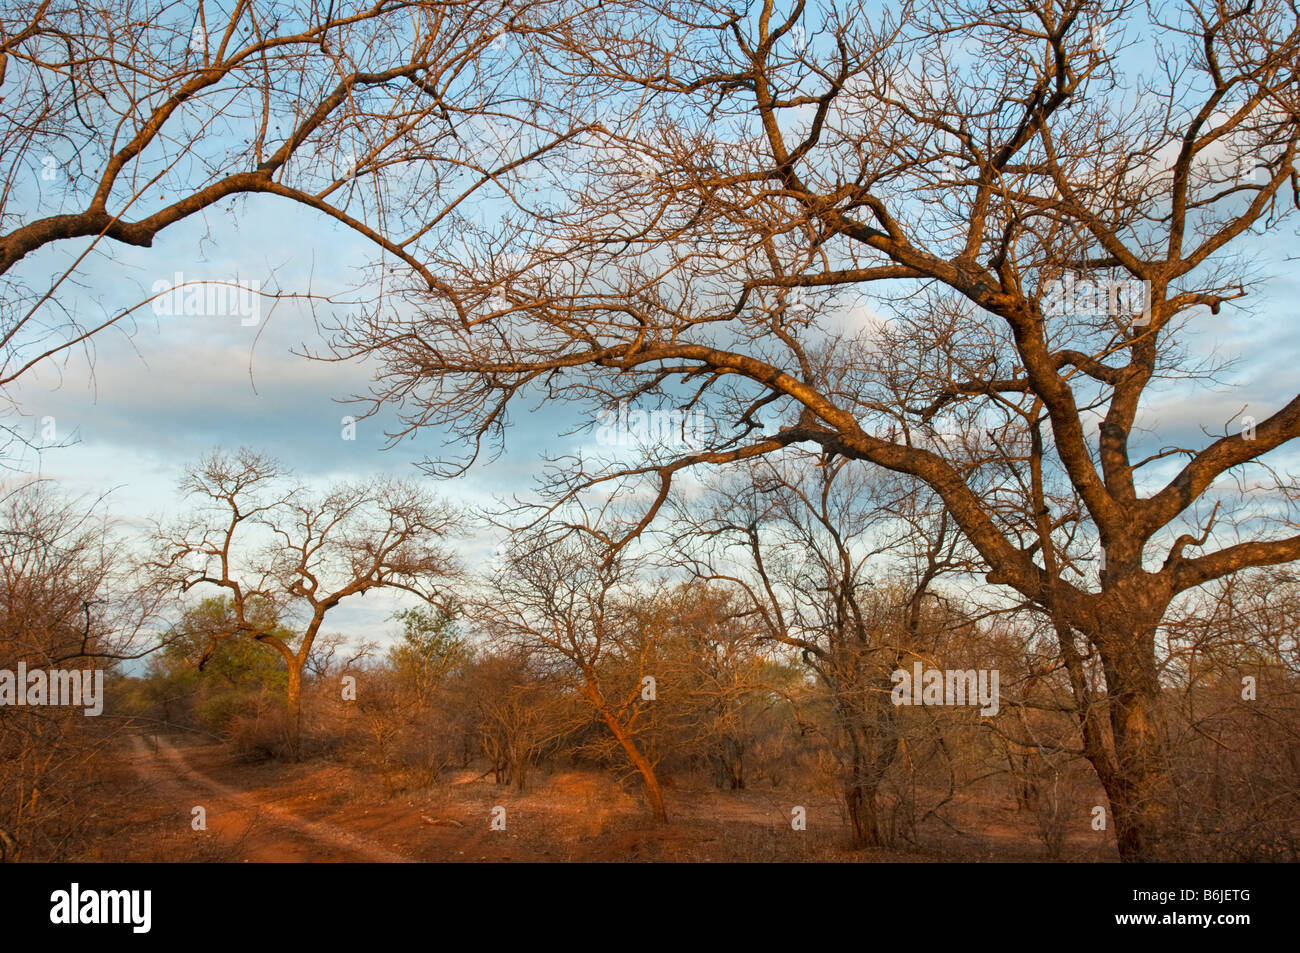 Tierra roja savanne SABANA SUR-ÁFRICA bush paisaje boscoso Sudáfrica acacia off road moguls árboles de acacia robinia Foto de stock